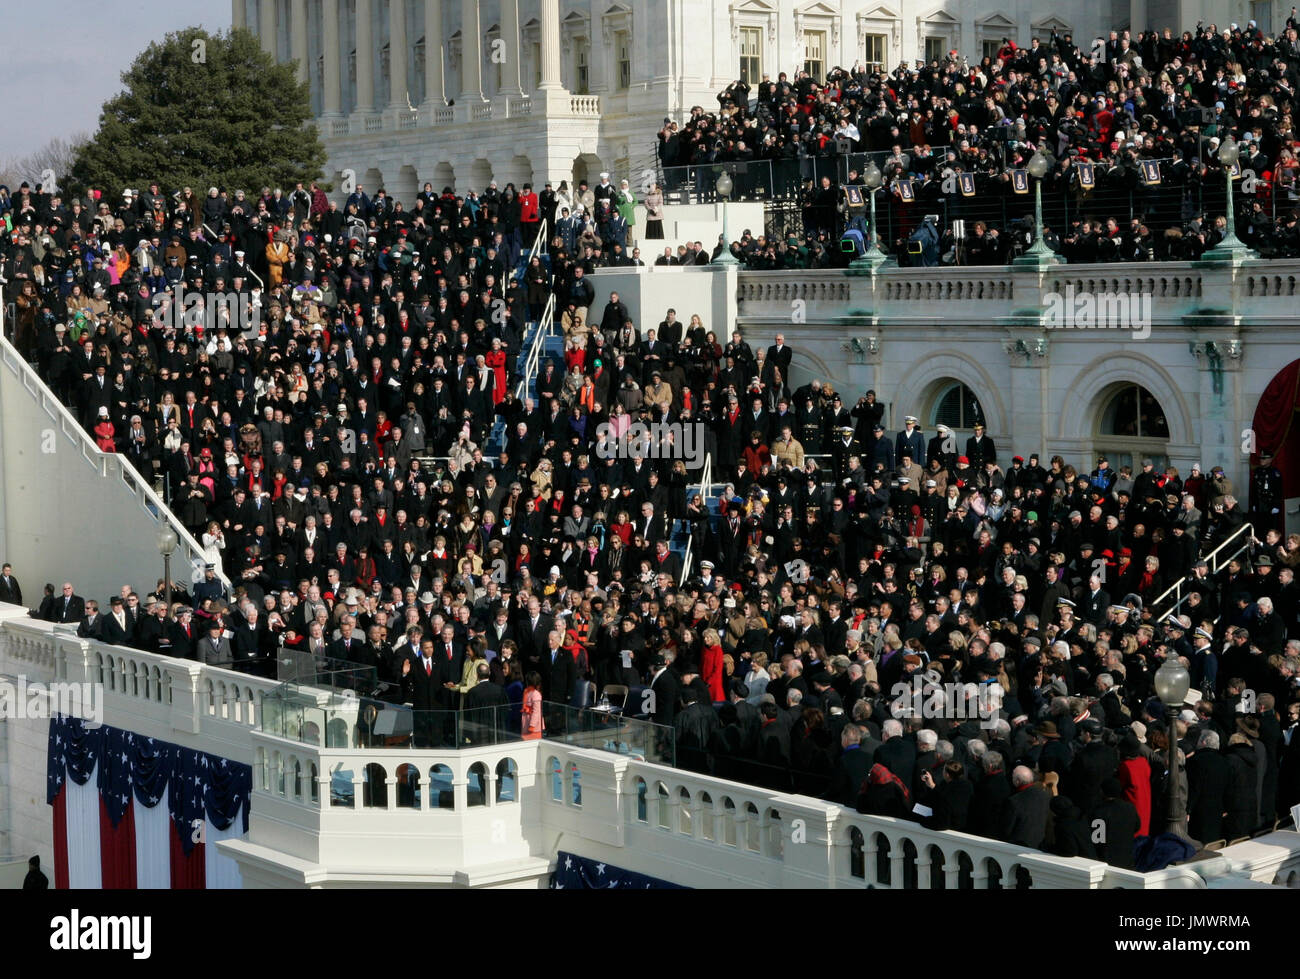 Washington, DC - 20 janvier 2009 -- Barack H. Obama a prêté serment en tant que 44e président des États-Unis lors de la cérémonie d'inauguration, à l'Ouest avant de l'United States Capitol à Washington, DC, le mardi 20 janvier 2009..Crédit : Jim Bourg - Piscine via CNP Banque D'Images